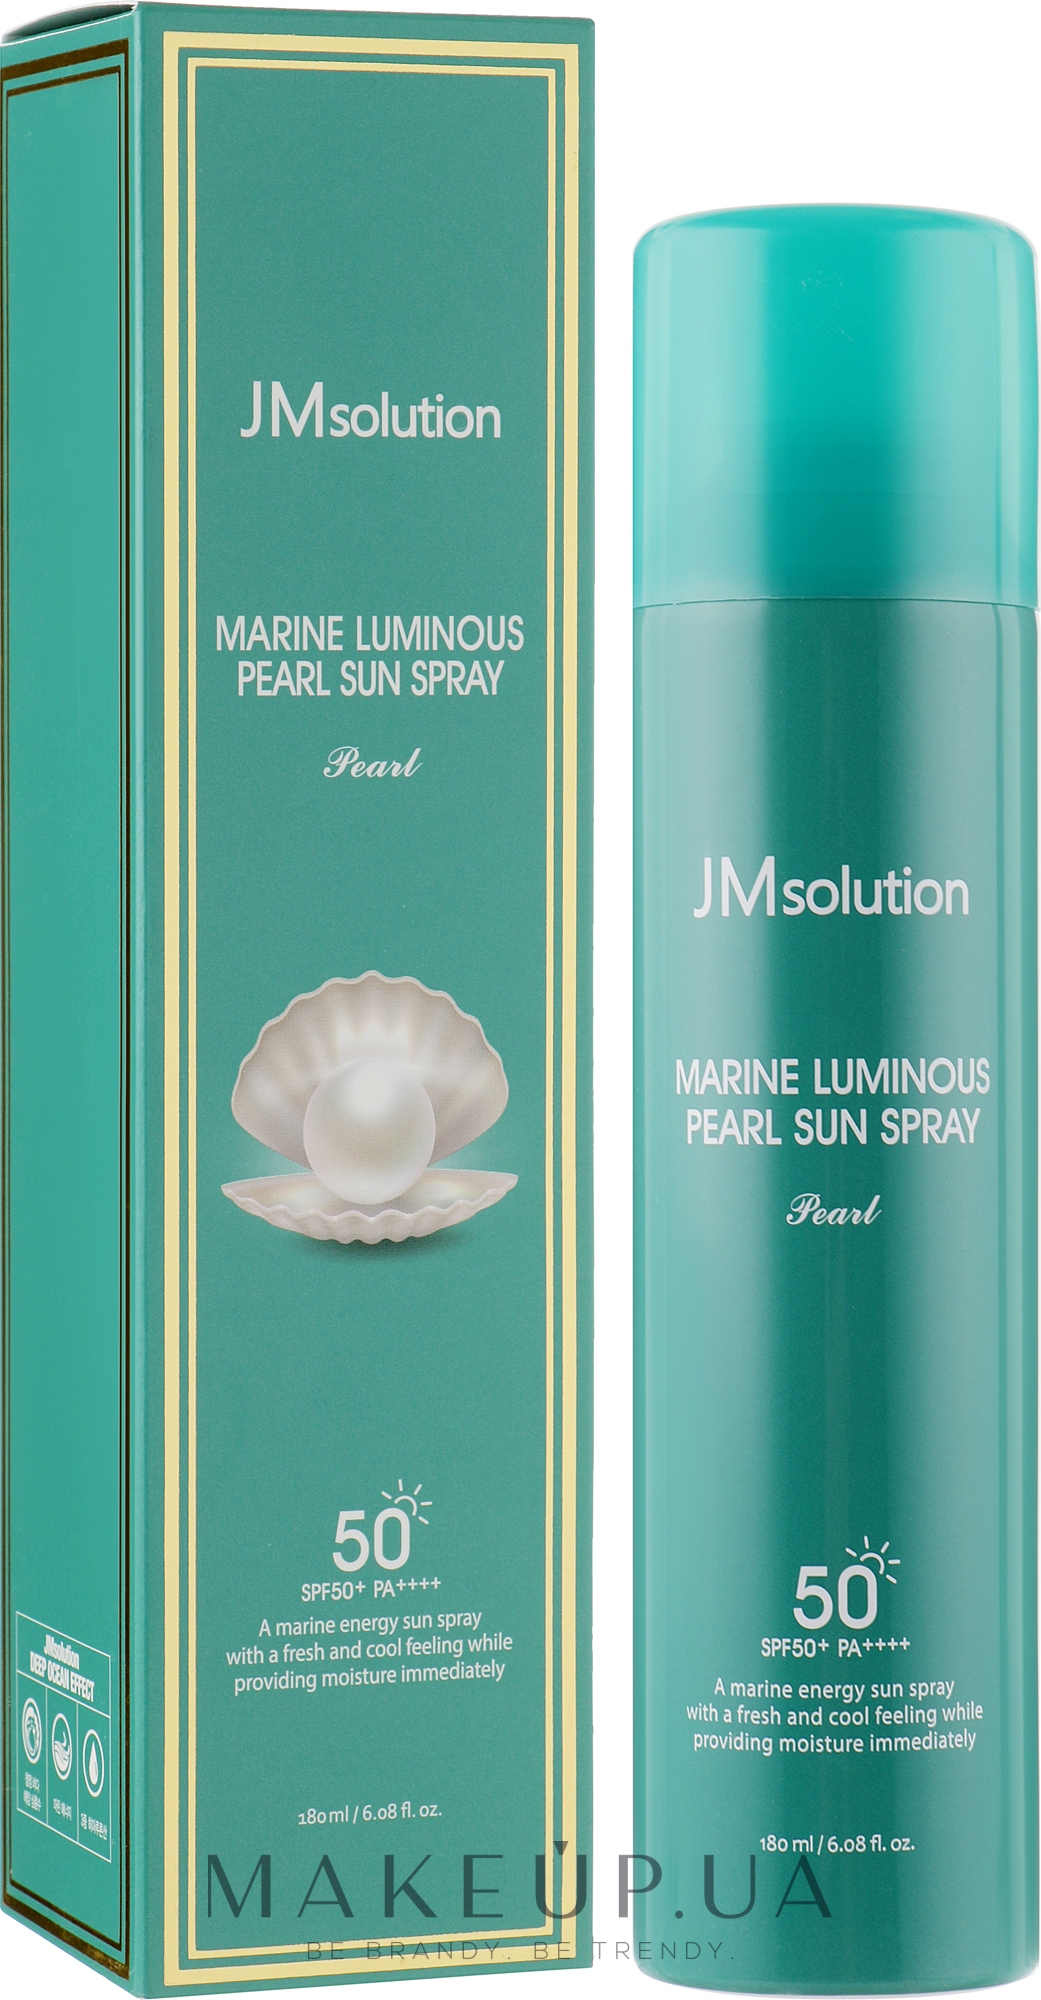 Сонцезахисний спрей для обличчя - JMsolution Marine Luminous Pearl Sun Spray Pearl SPF50+ PA++++ — фото 180ml